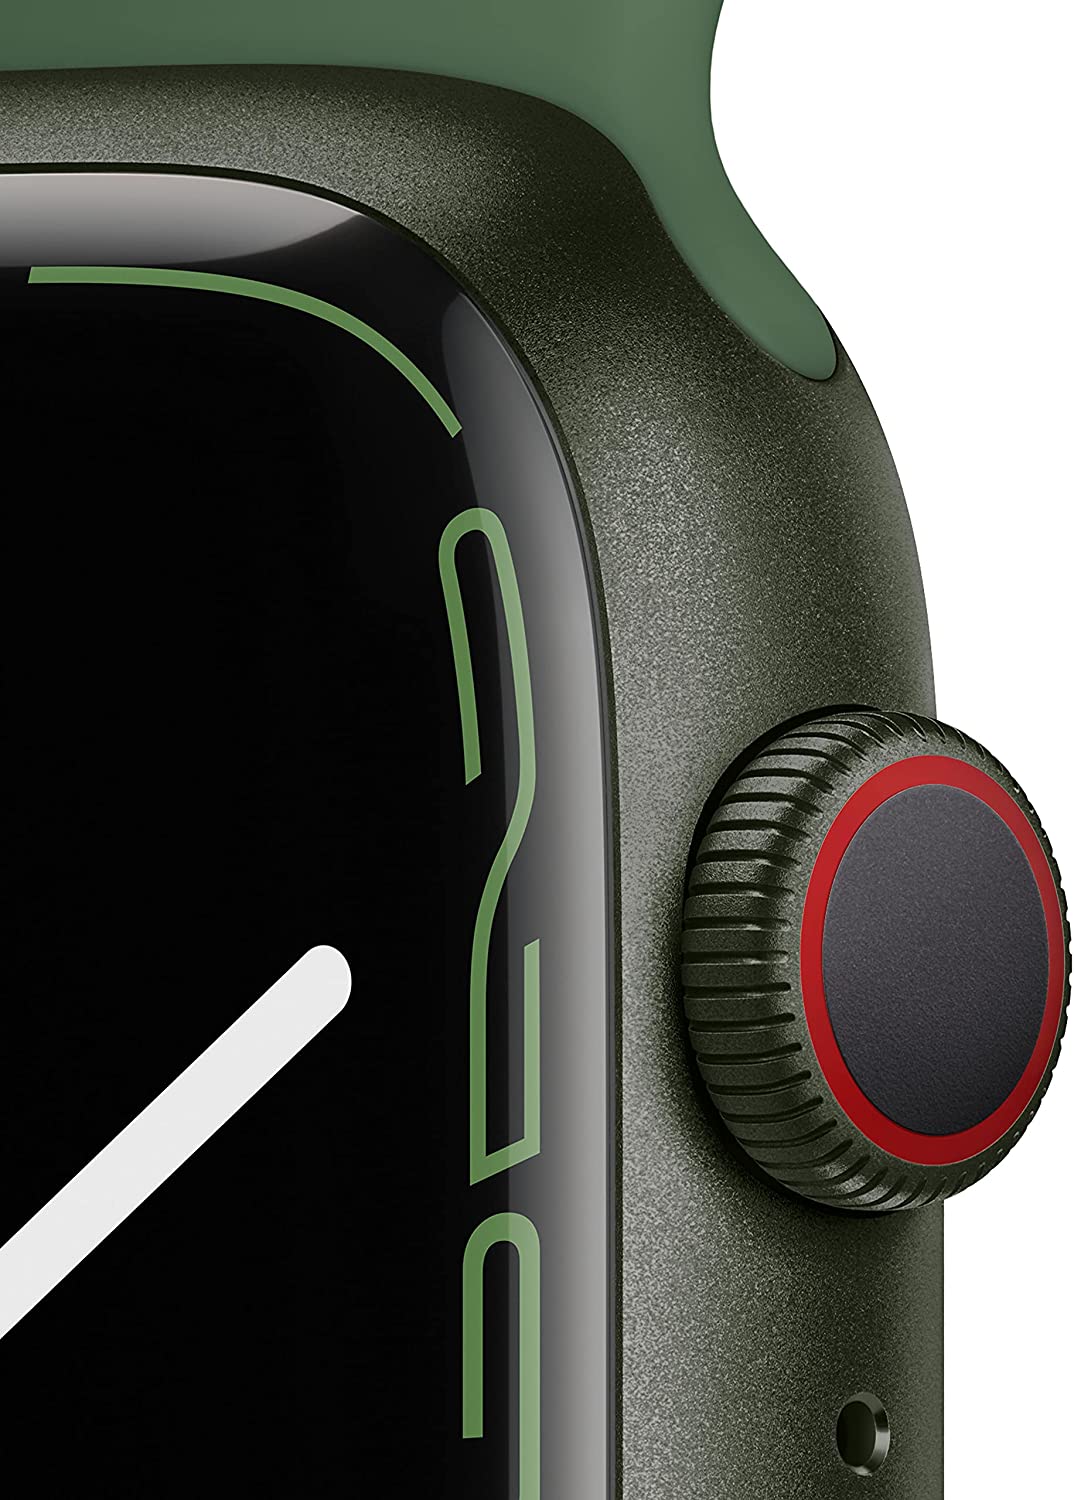 Apple Watch Series 7 (GPS + Cellular) Cassa 45 mm